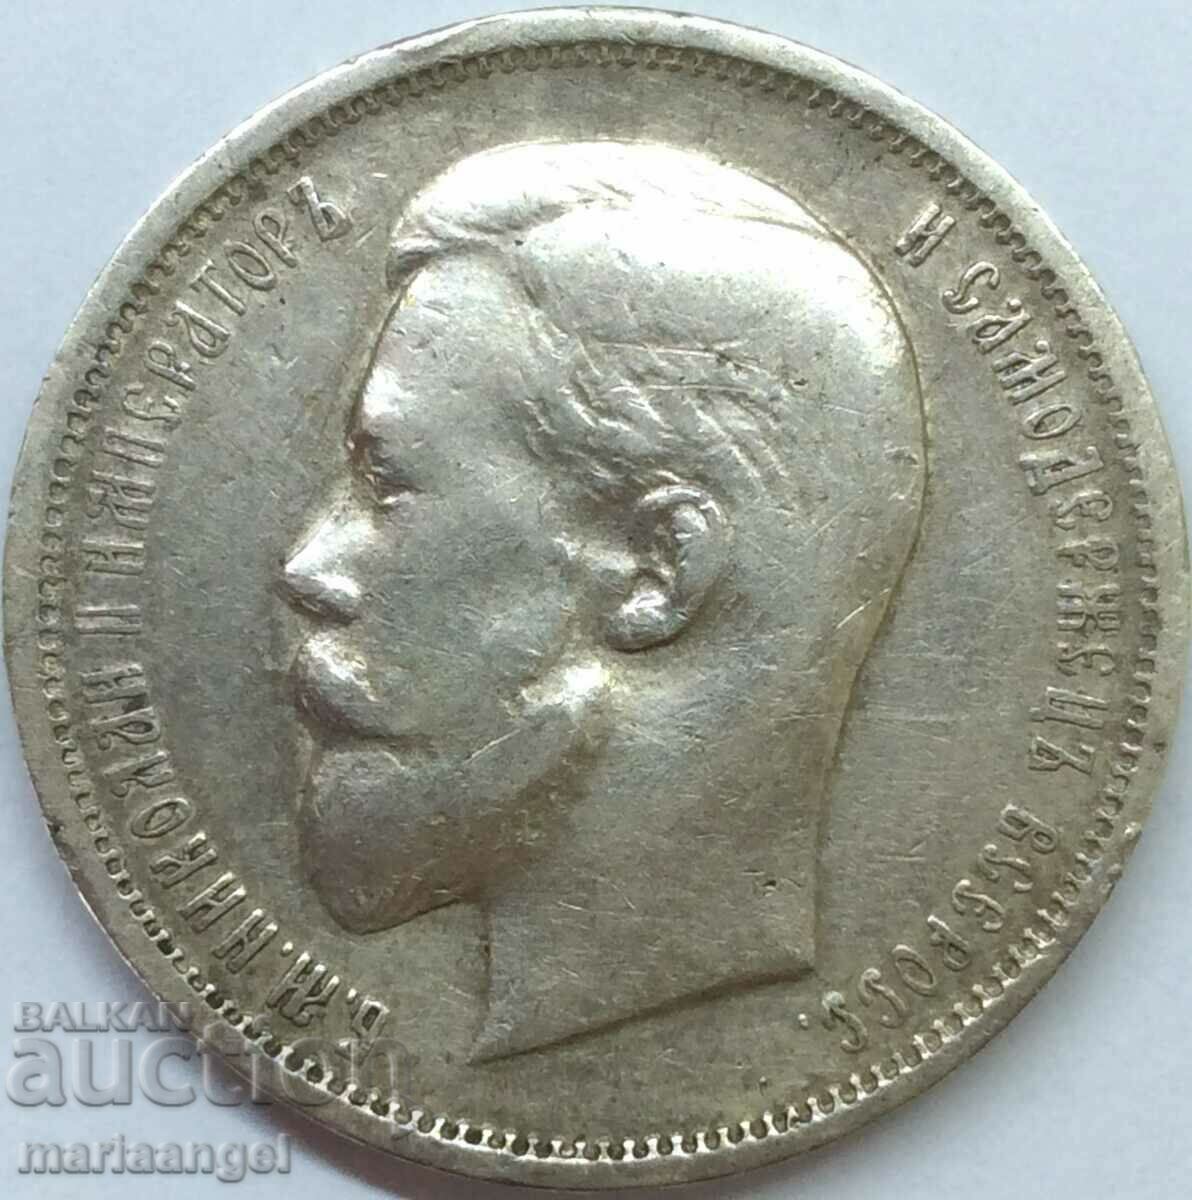 Russia 50 kopecks 1911 EB Nicholas II silver